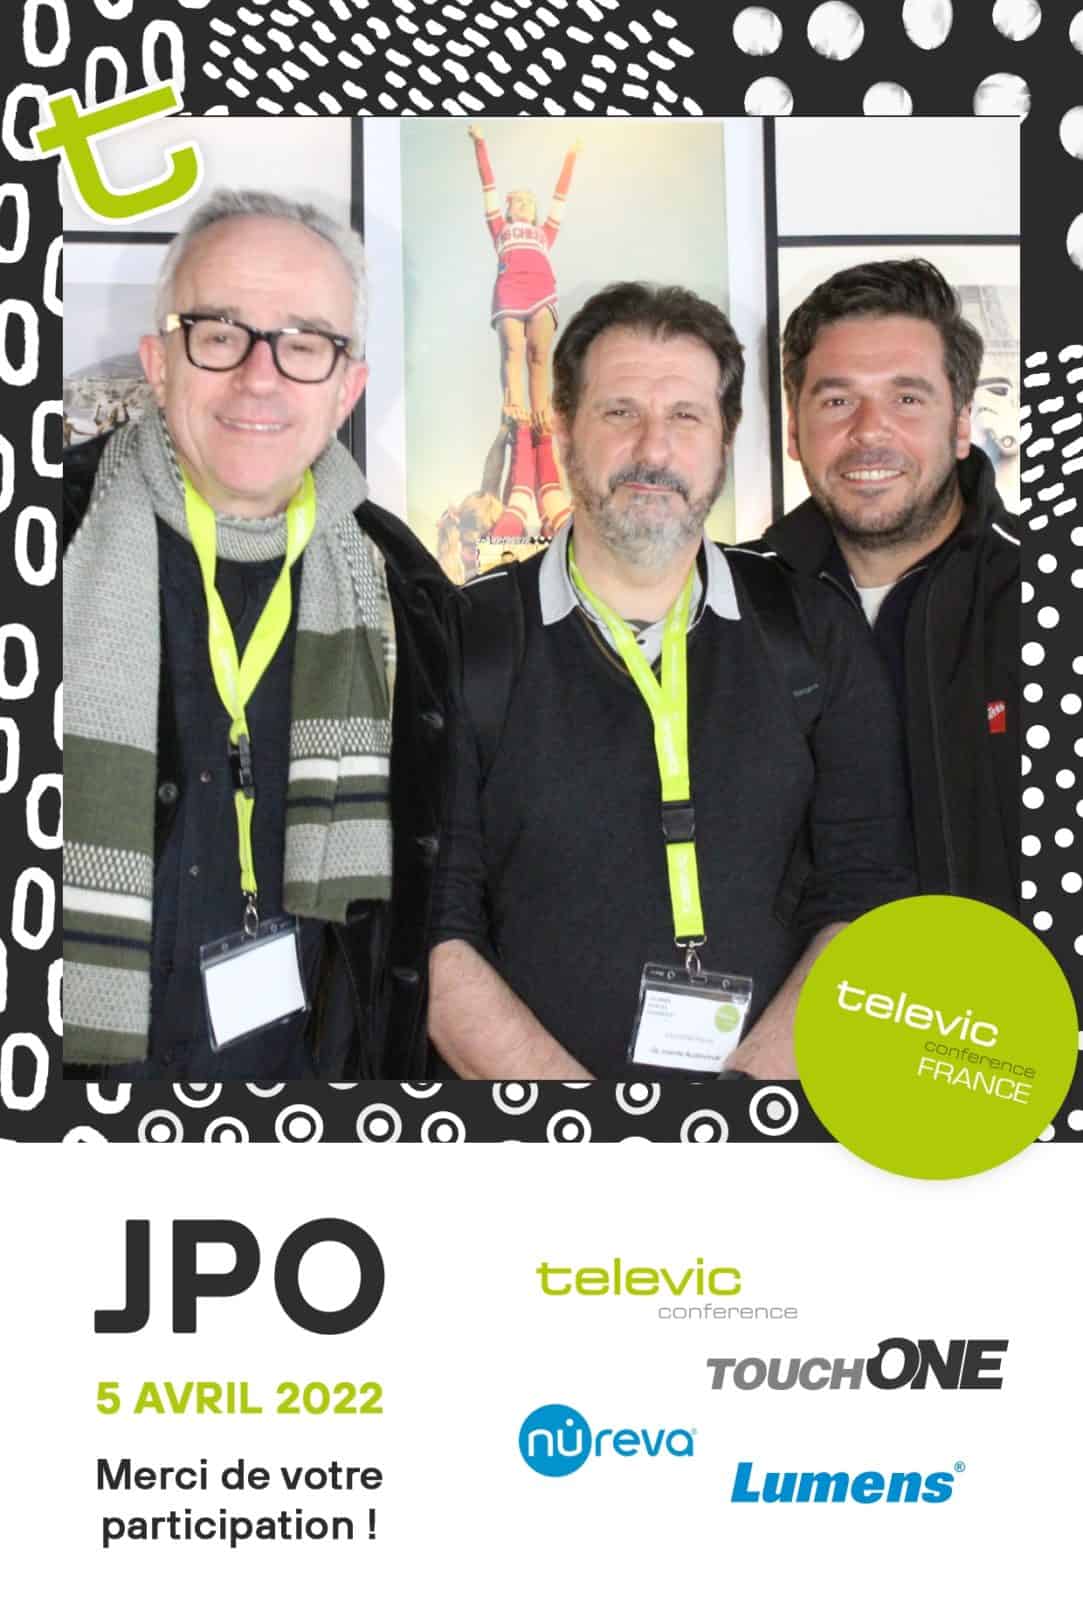 Borne Photo Journée Portes Ouvertes Televic Conference France 8